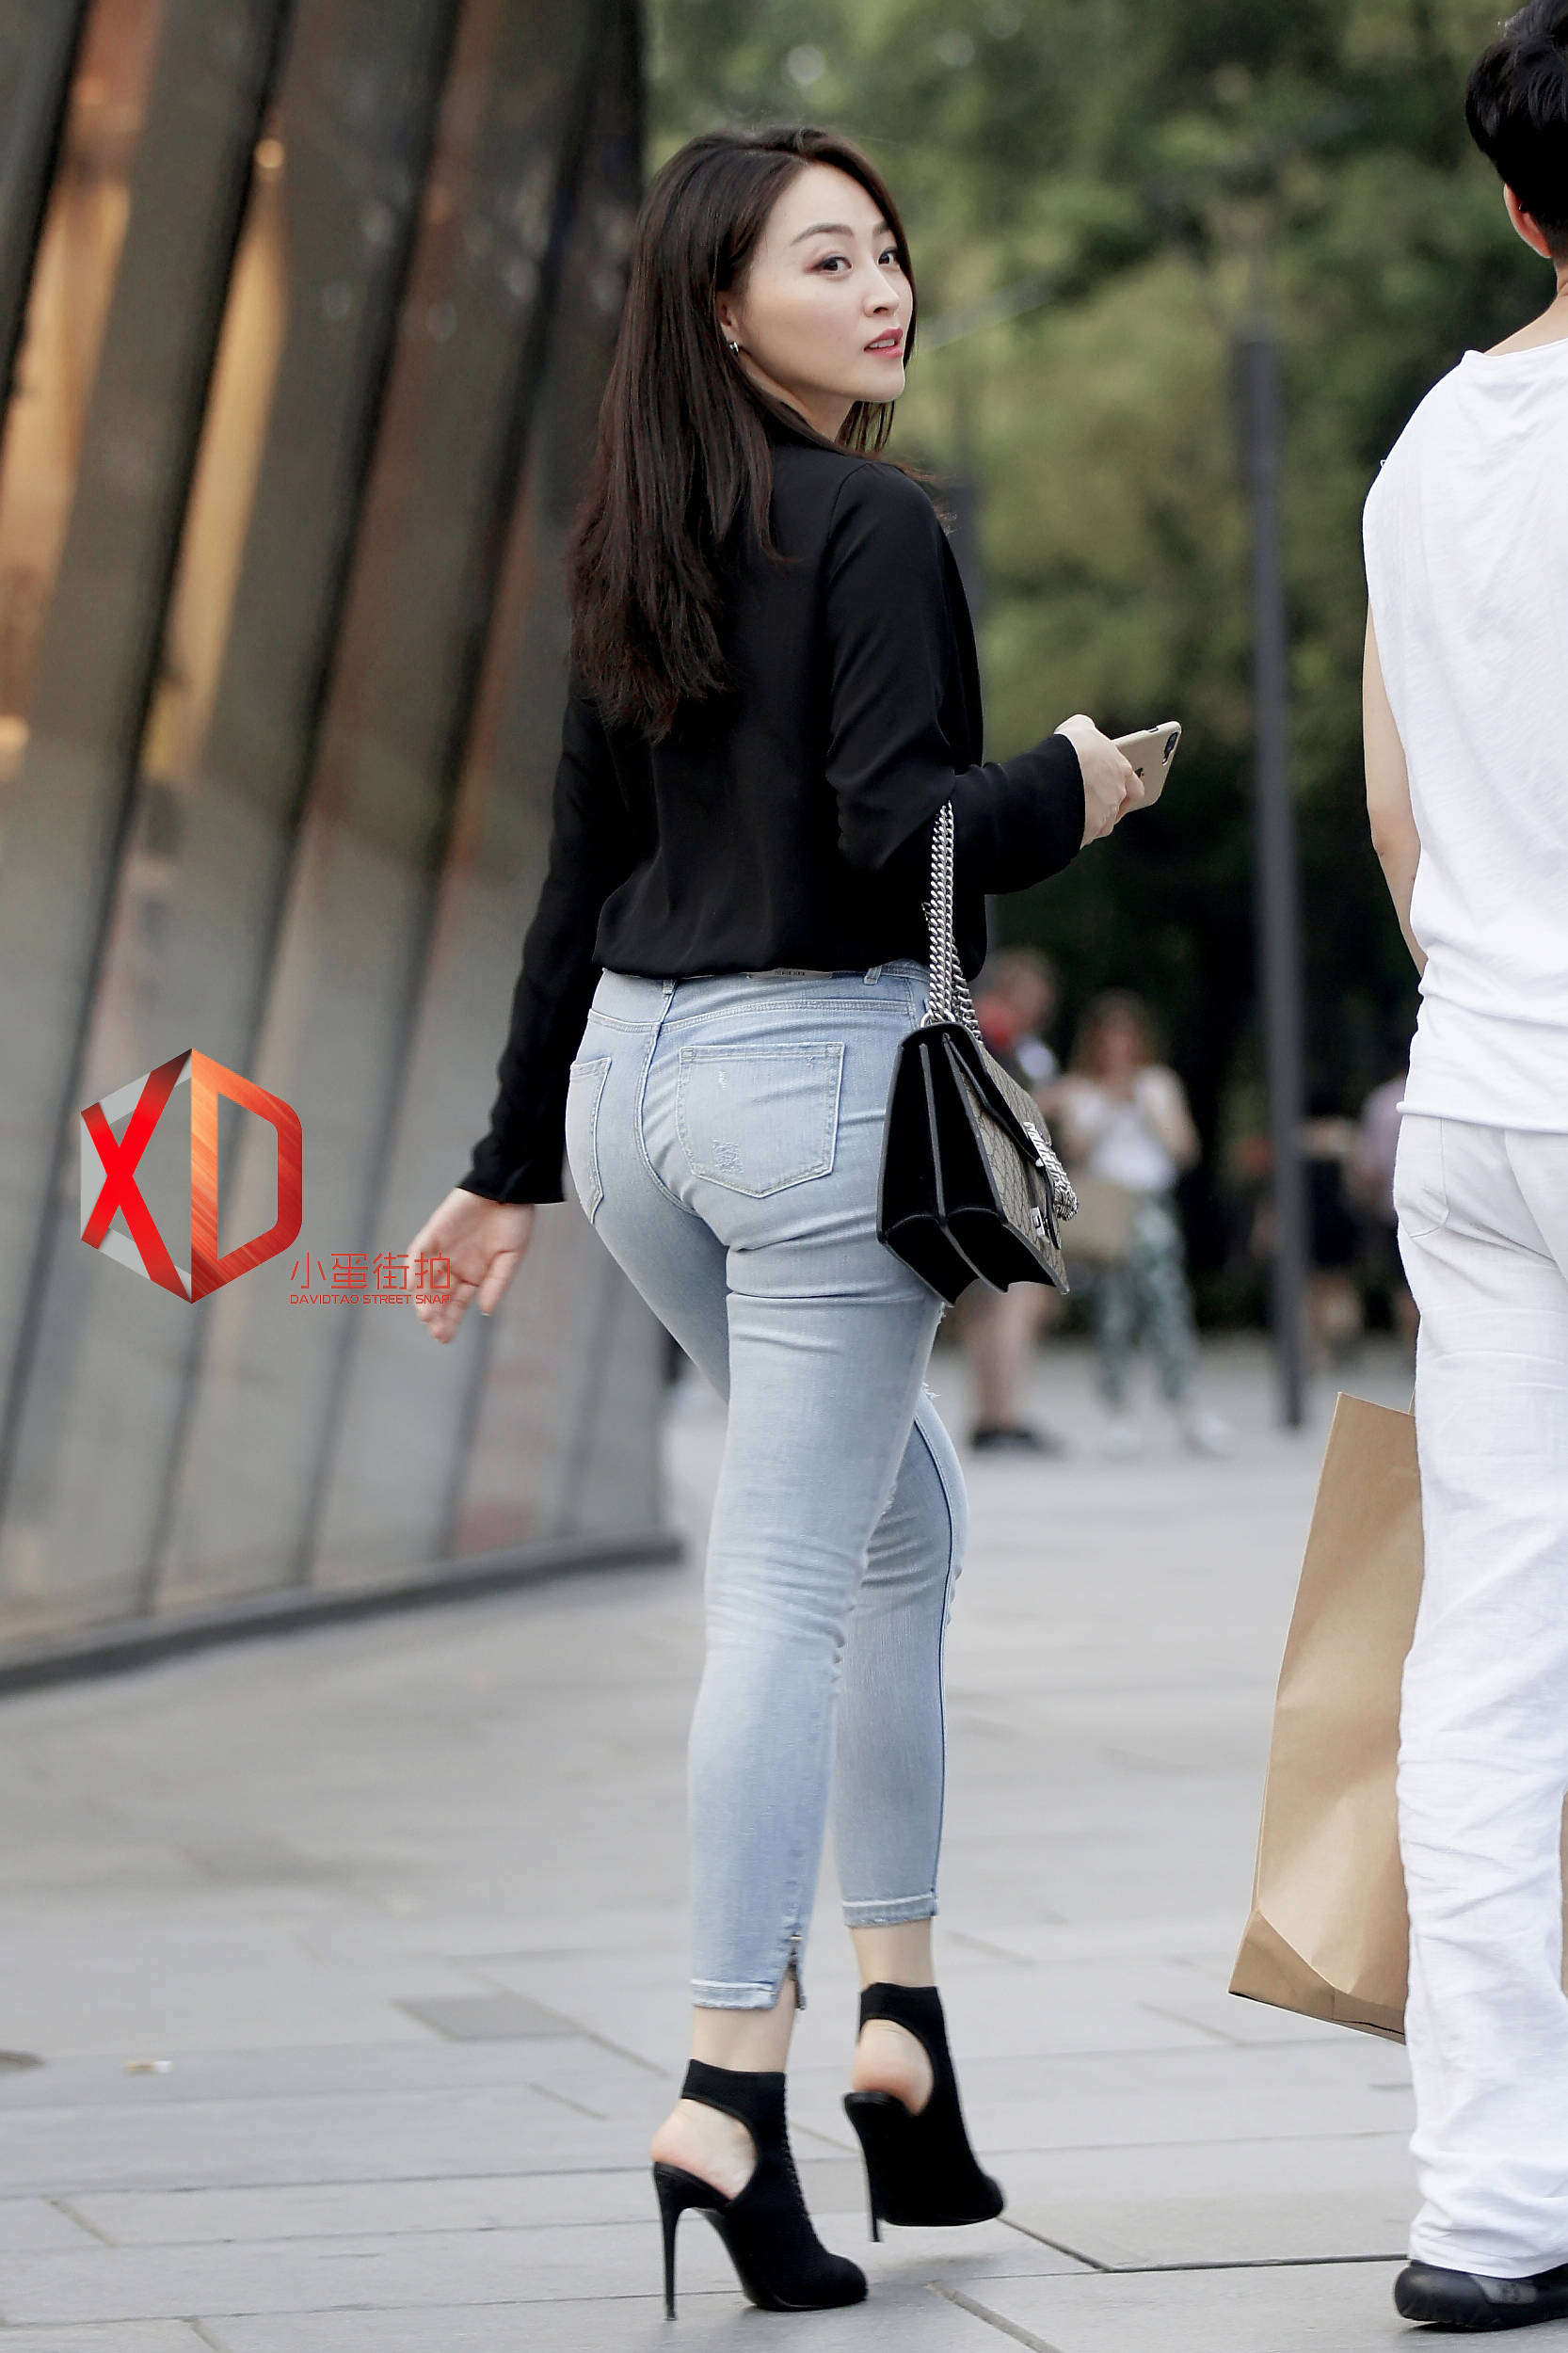 街拍这样的紧身牛仔裤最能展示女性的身材